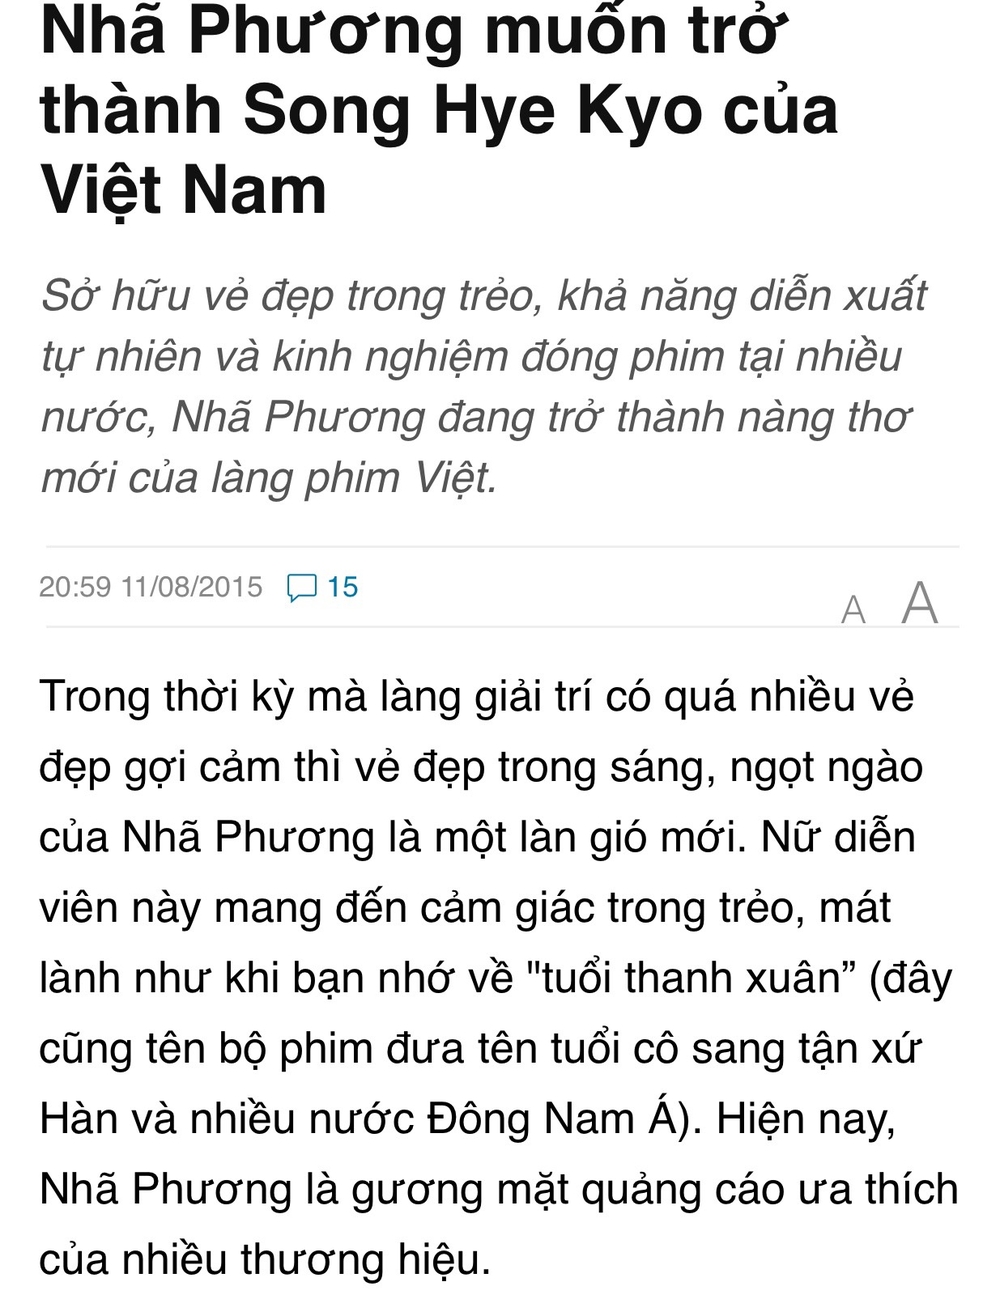 Bất ngờ phát hiện từ 3 năm trước, Nhã Phương đã muốn trở thành Song Hye Kyo của Việt Nam